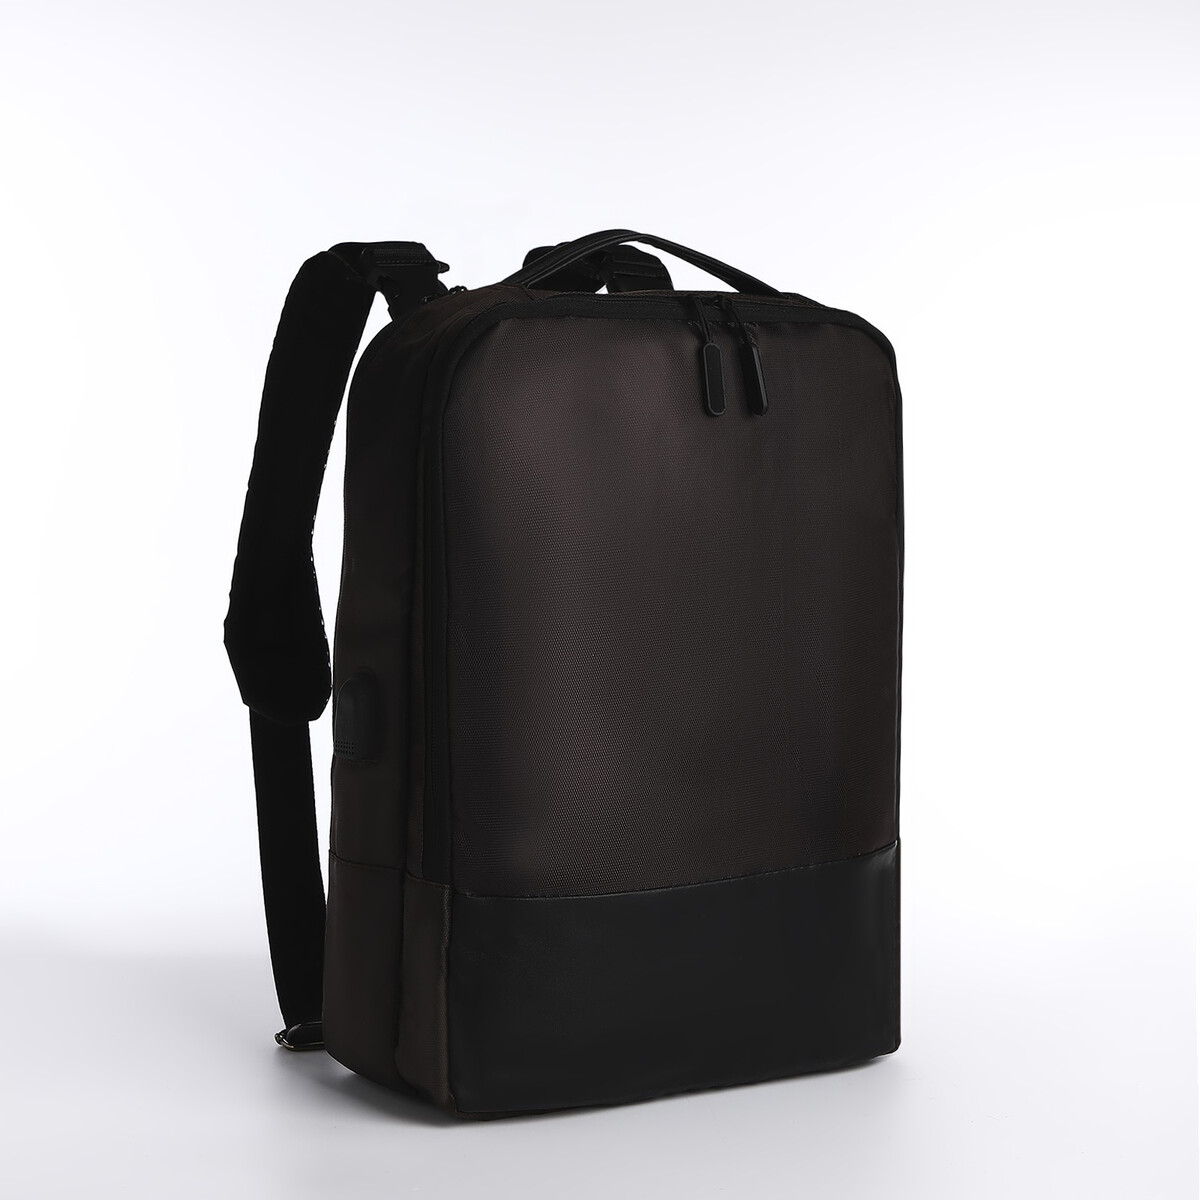 Рюкзак-сумка на молнии, 2 наружных кармана, цвет коричневый рюкзак школьный из текстиля на молнии 3 кармана пенал коричневый оранжевый